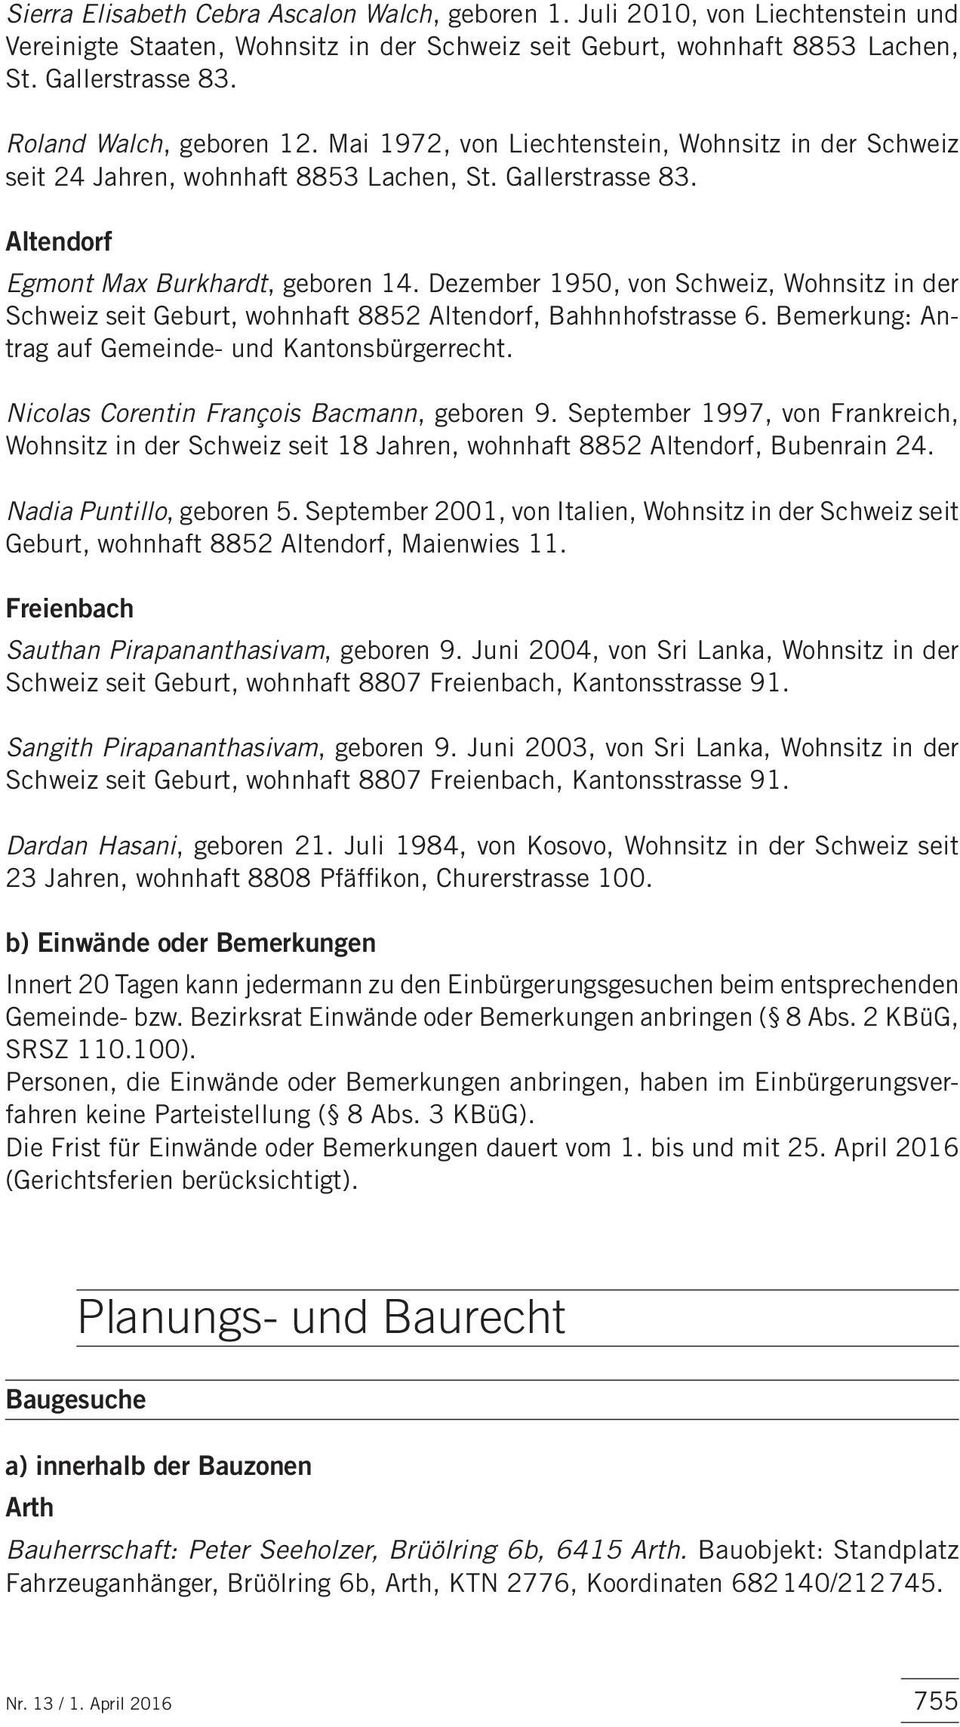 Dezember 1950, von Schweiz, Wohnsitz in der Schweiz seit Geburt, wohnhaft 8852 Altendorf, Bahhnhofstrasse 6. Bemerkung: Antrag auf Gemeinde- und Kantonsbürgerrecht.